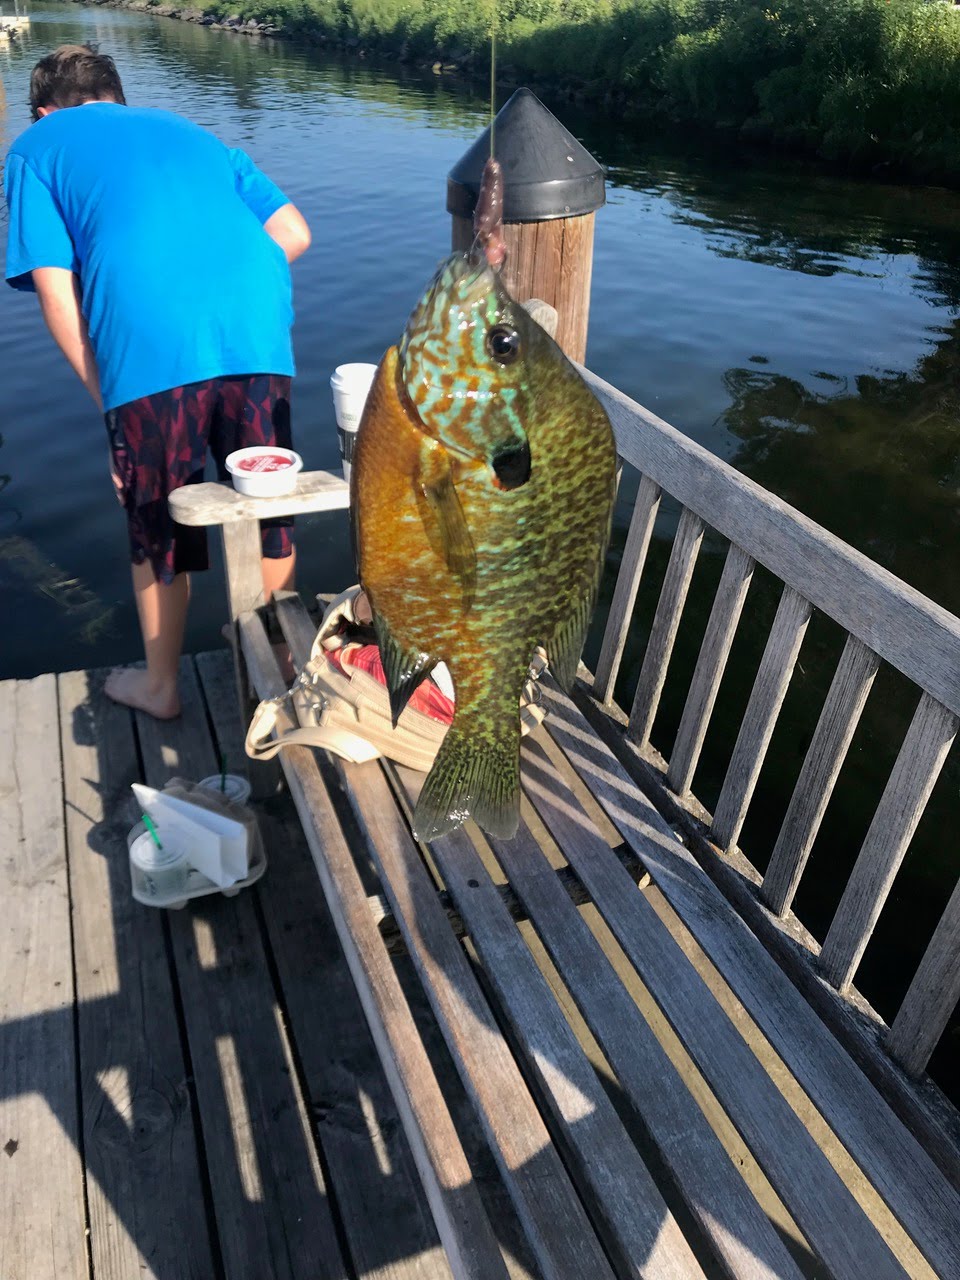 Big catch today on Wayzata dock.